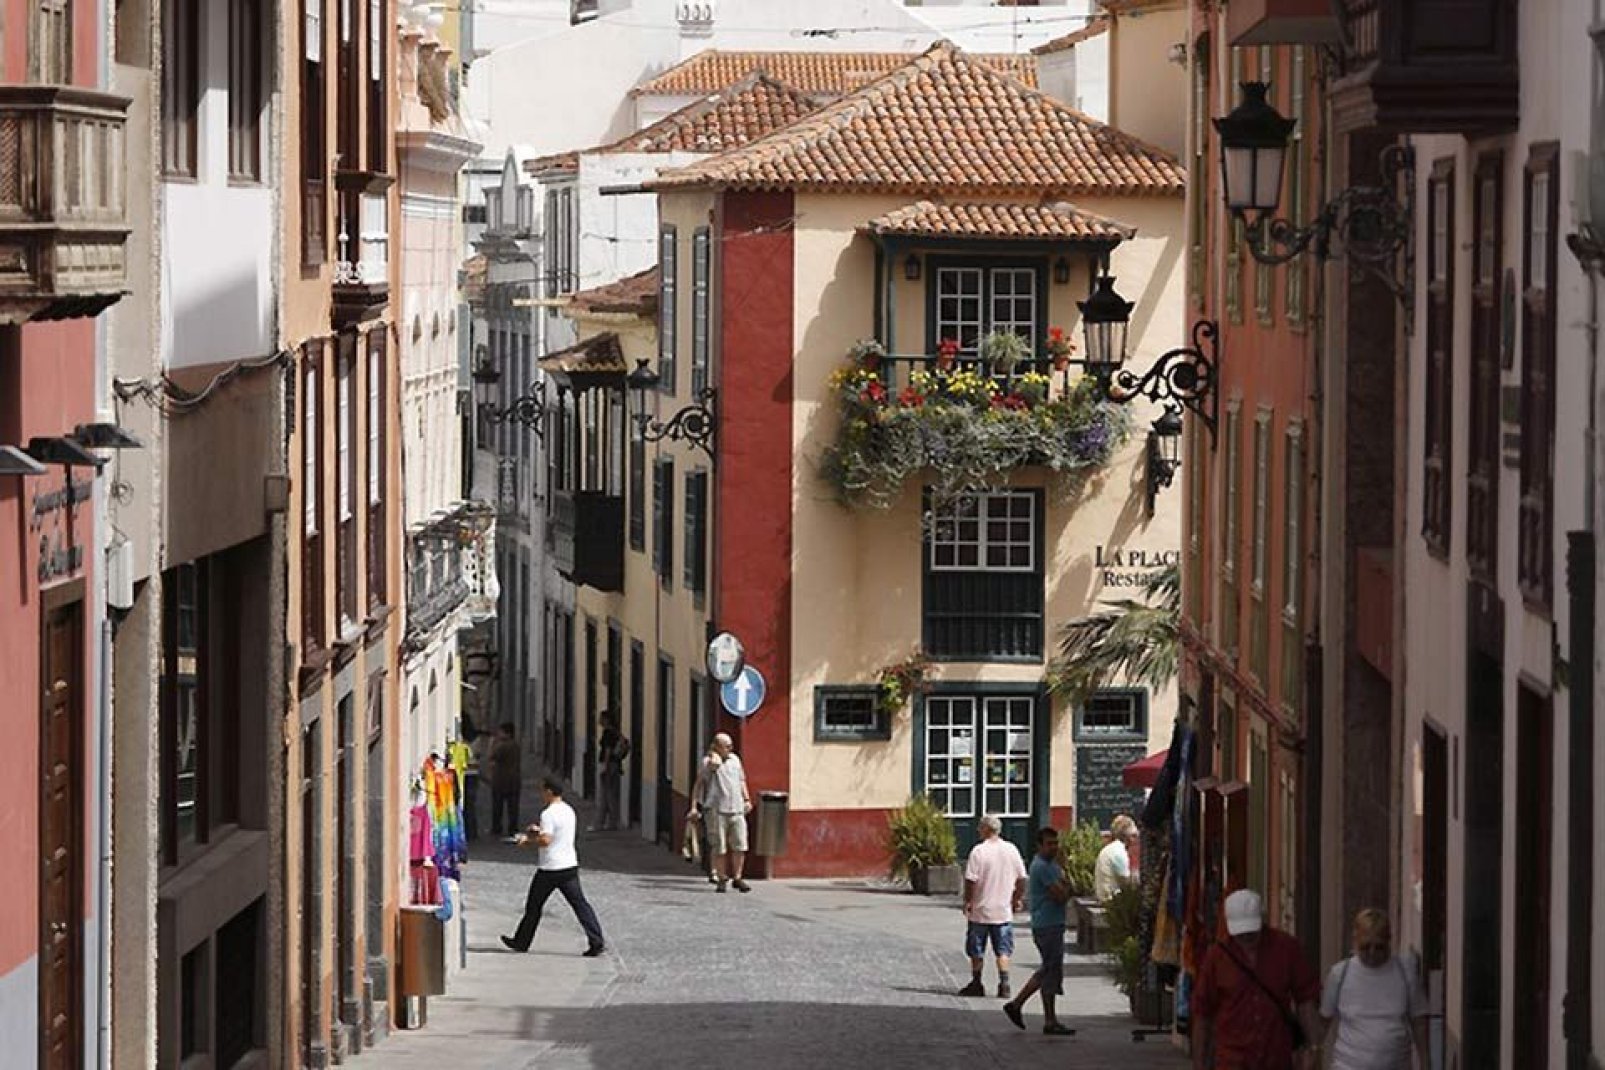 Non perdetevi la via San Sebastián che vi propone una passeggiata evocatrice nel cuore di una zona che concentra l'architettura e la cultura tipiche dell'isola.